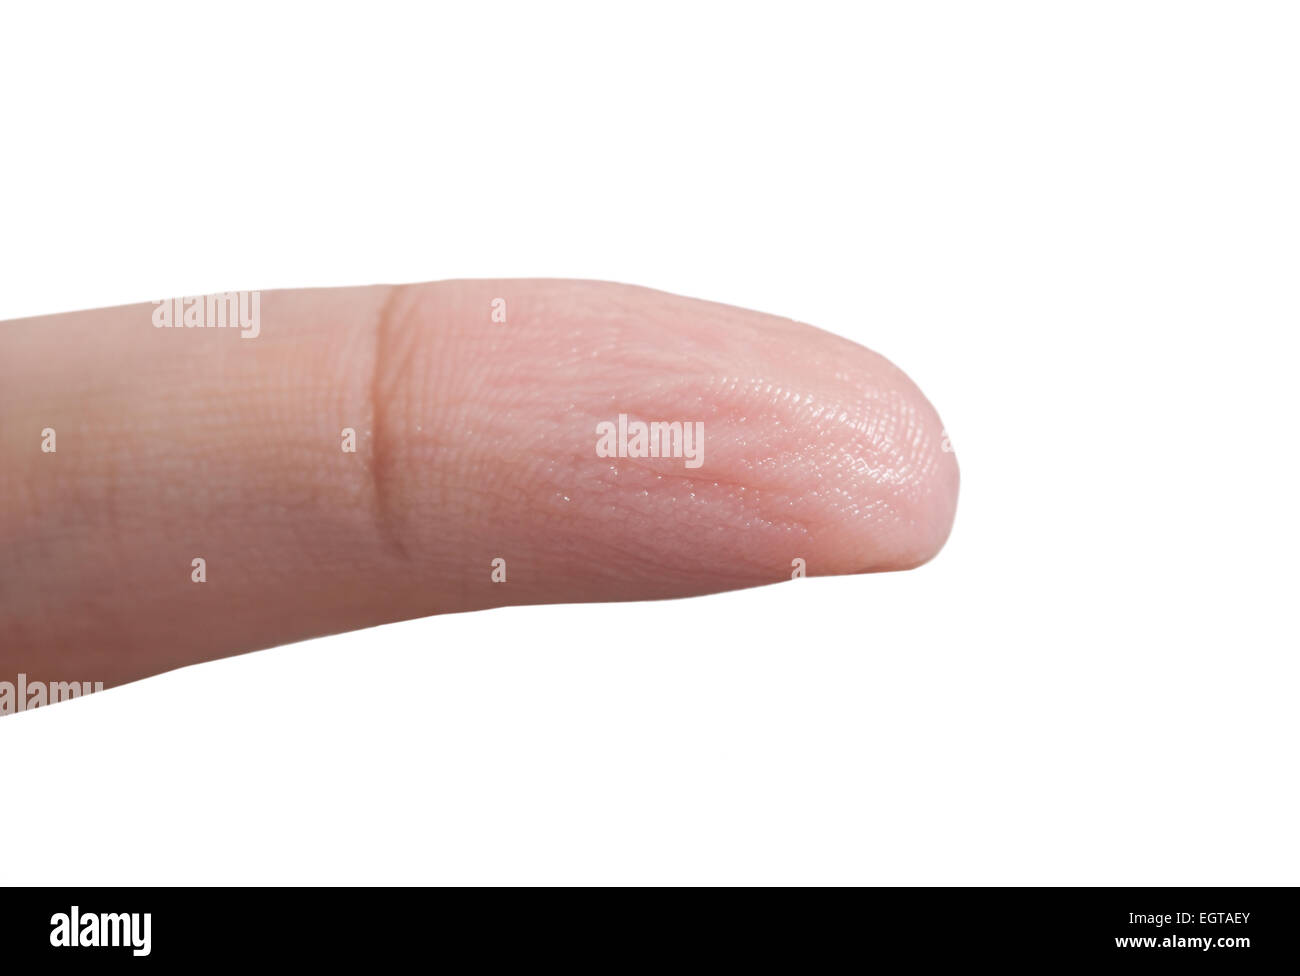 Pelle rugosa di un dito della mano a causa del lungo periodo di tempo in acqua. Foto Stock